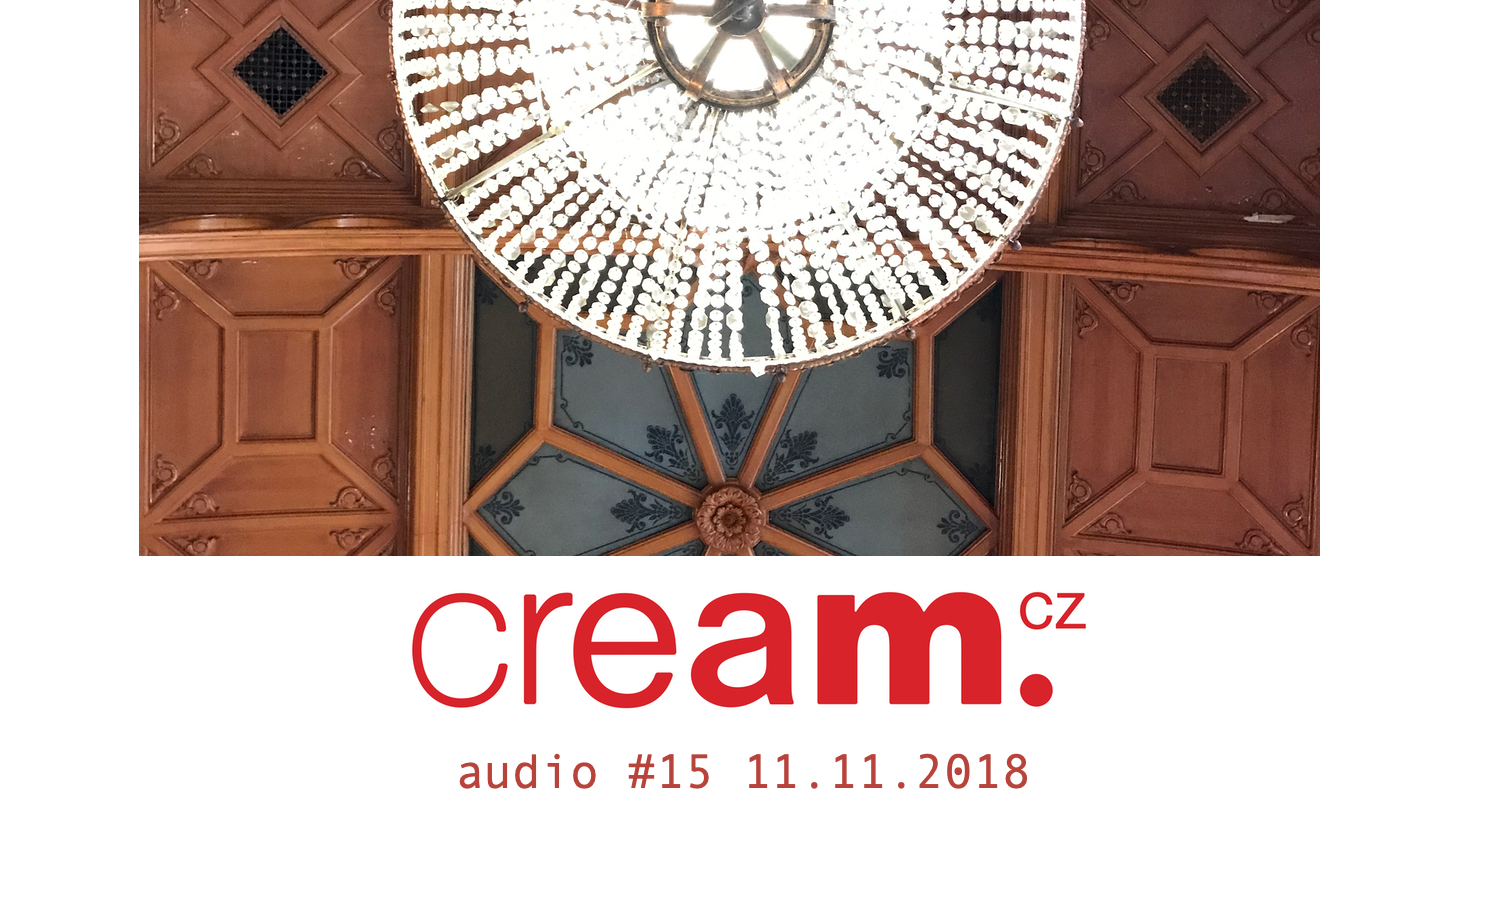 Cream.cz Audio 15 je venku. Moods, Abstract Orchestra, Mndsgn,Nikobeats, Fatima a další